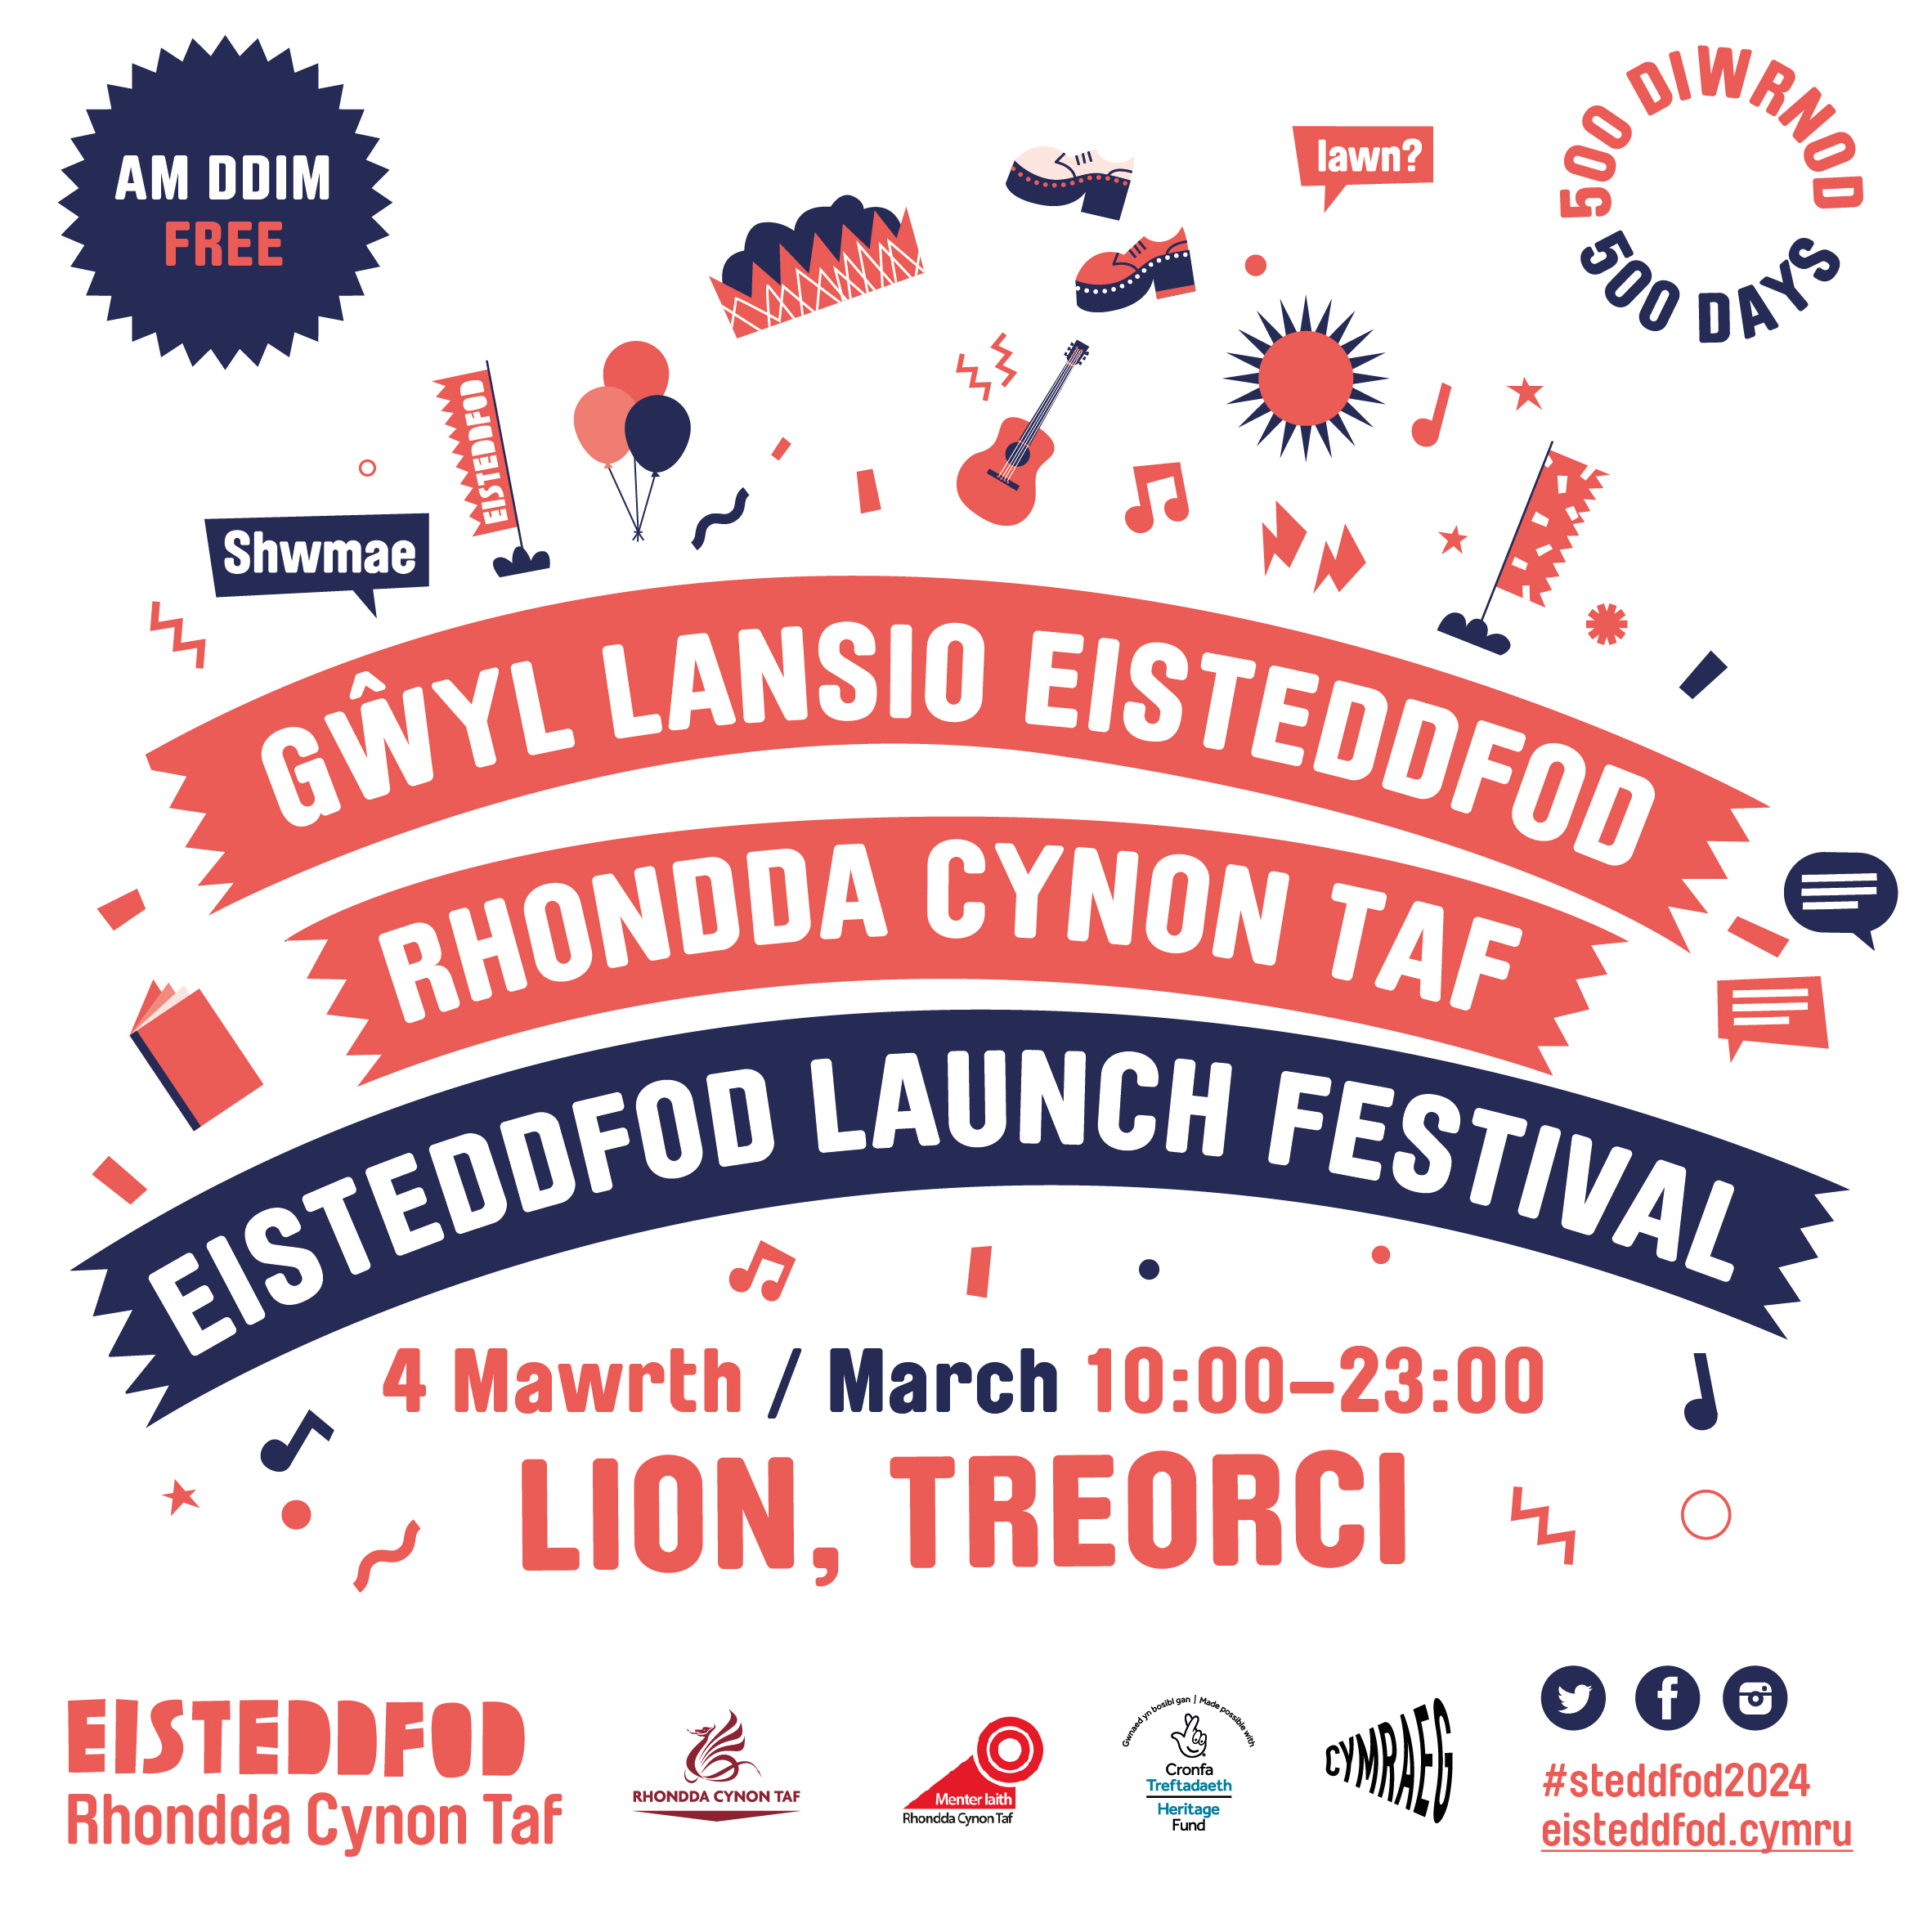 Rhondda Cynon Taf National Eisteddfod Launch